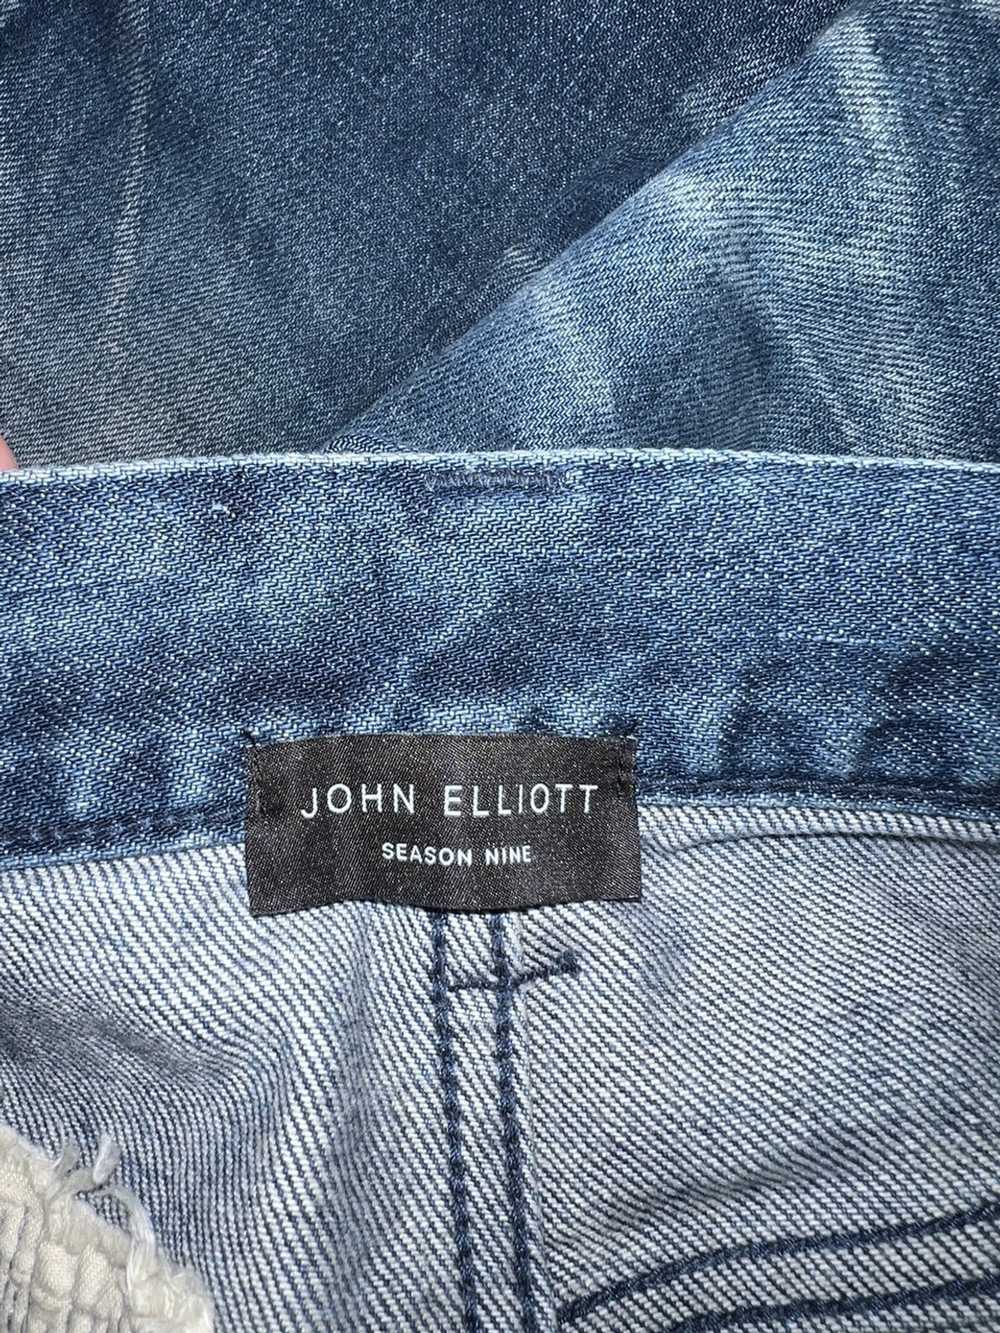 John Elliott Siena John Elliot - image 6